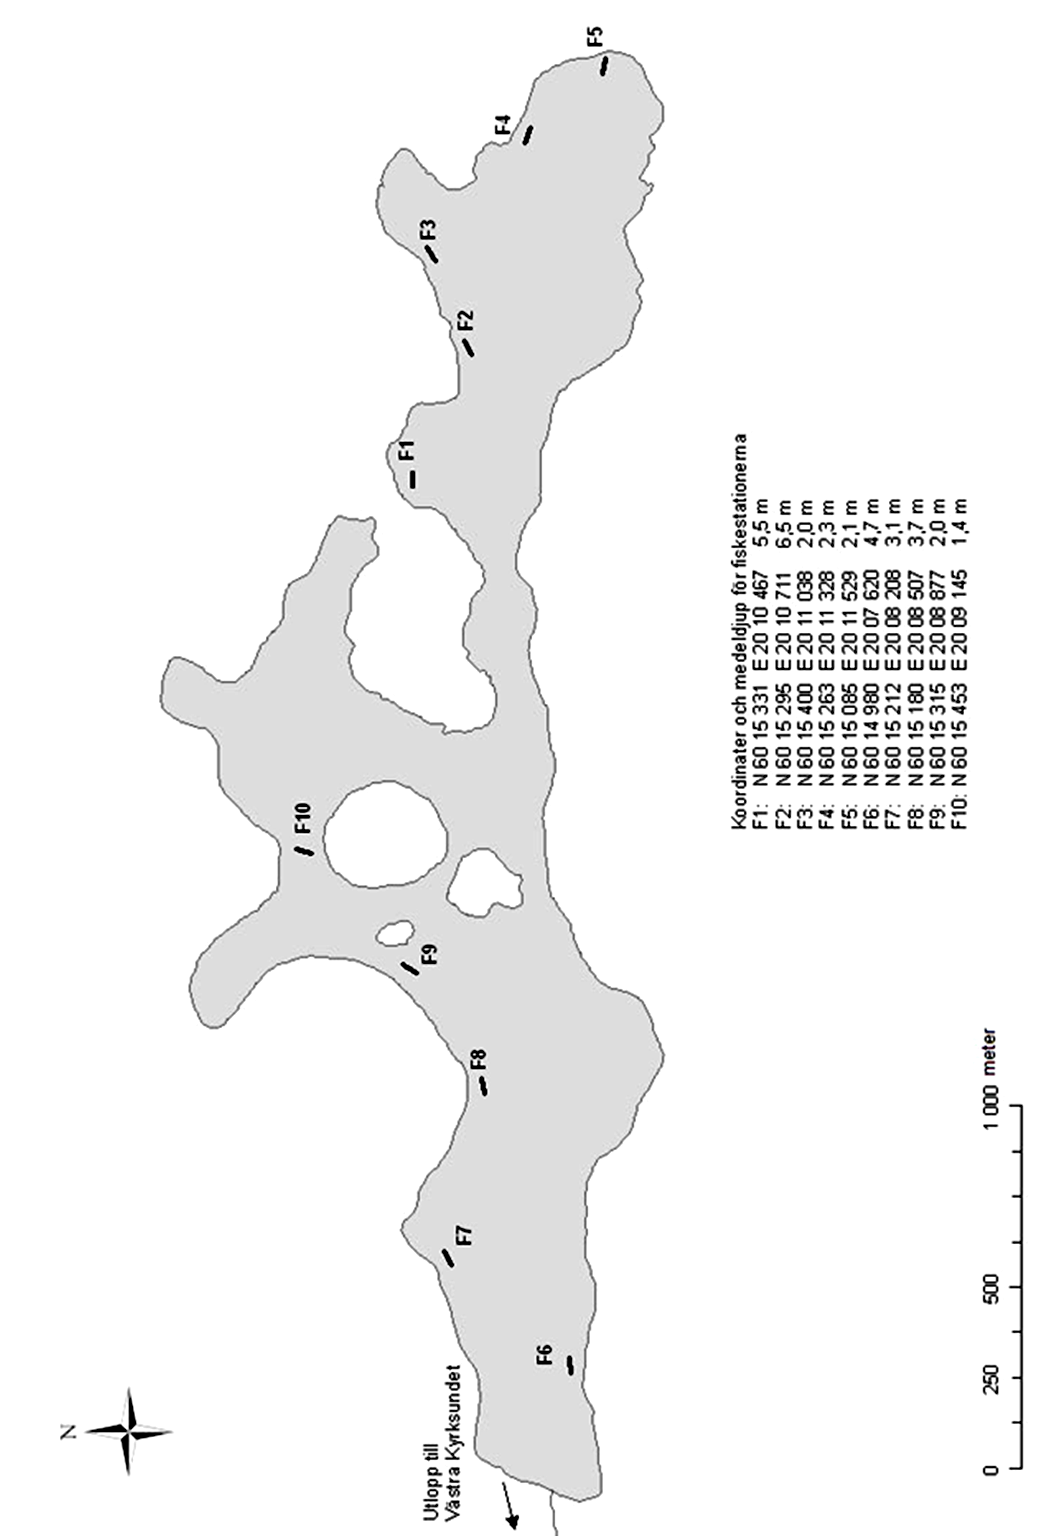 12 Fiskestationernas koordinater och medeldjup F1: N 6 15 355 E 2 1 32 4,6 m F2: N 6 15 37 E 2 1 69 5,5 m F3: N 6 15 388 E 2 1 999 1,9 m F4: N 6 15 25 E 2 11 362 2,5 m F5: N 6 15 197 E 2 11 461 3,9 m